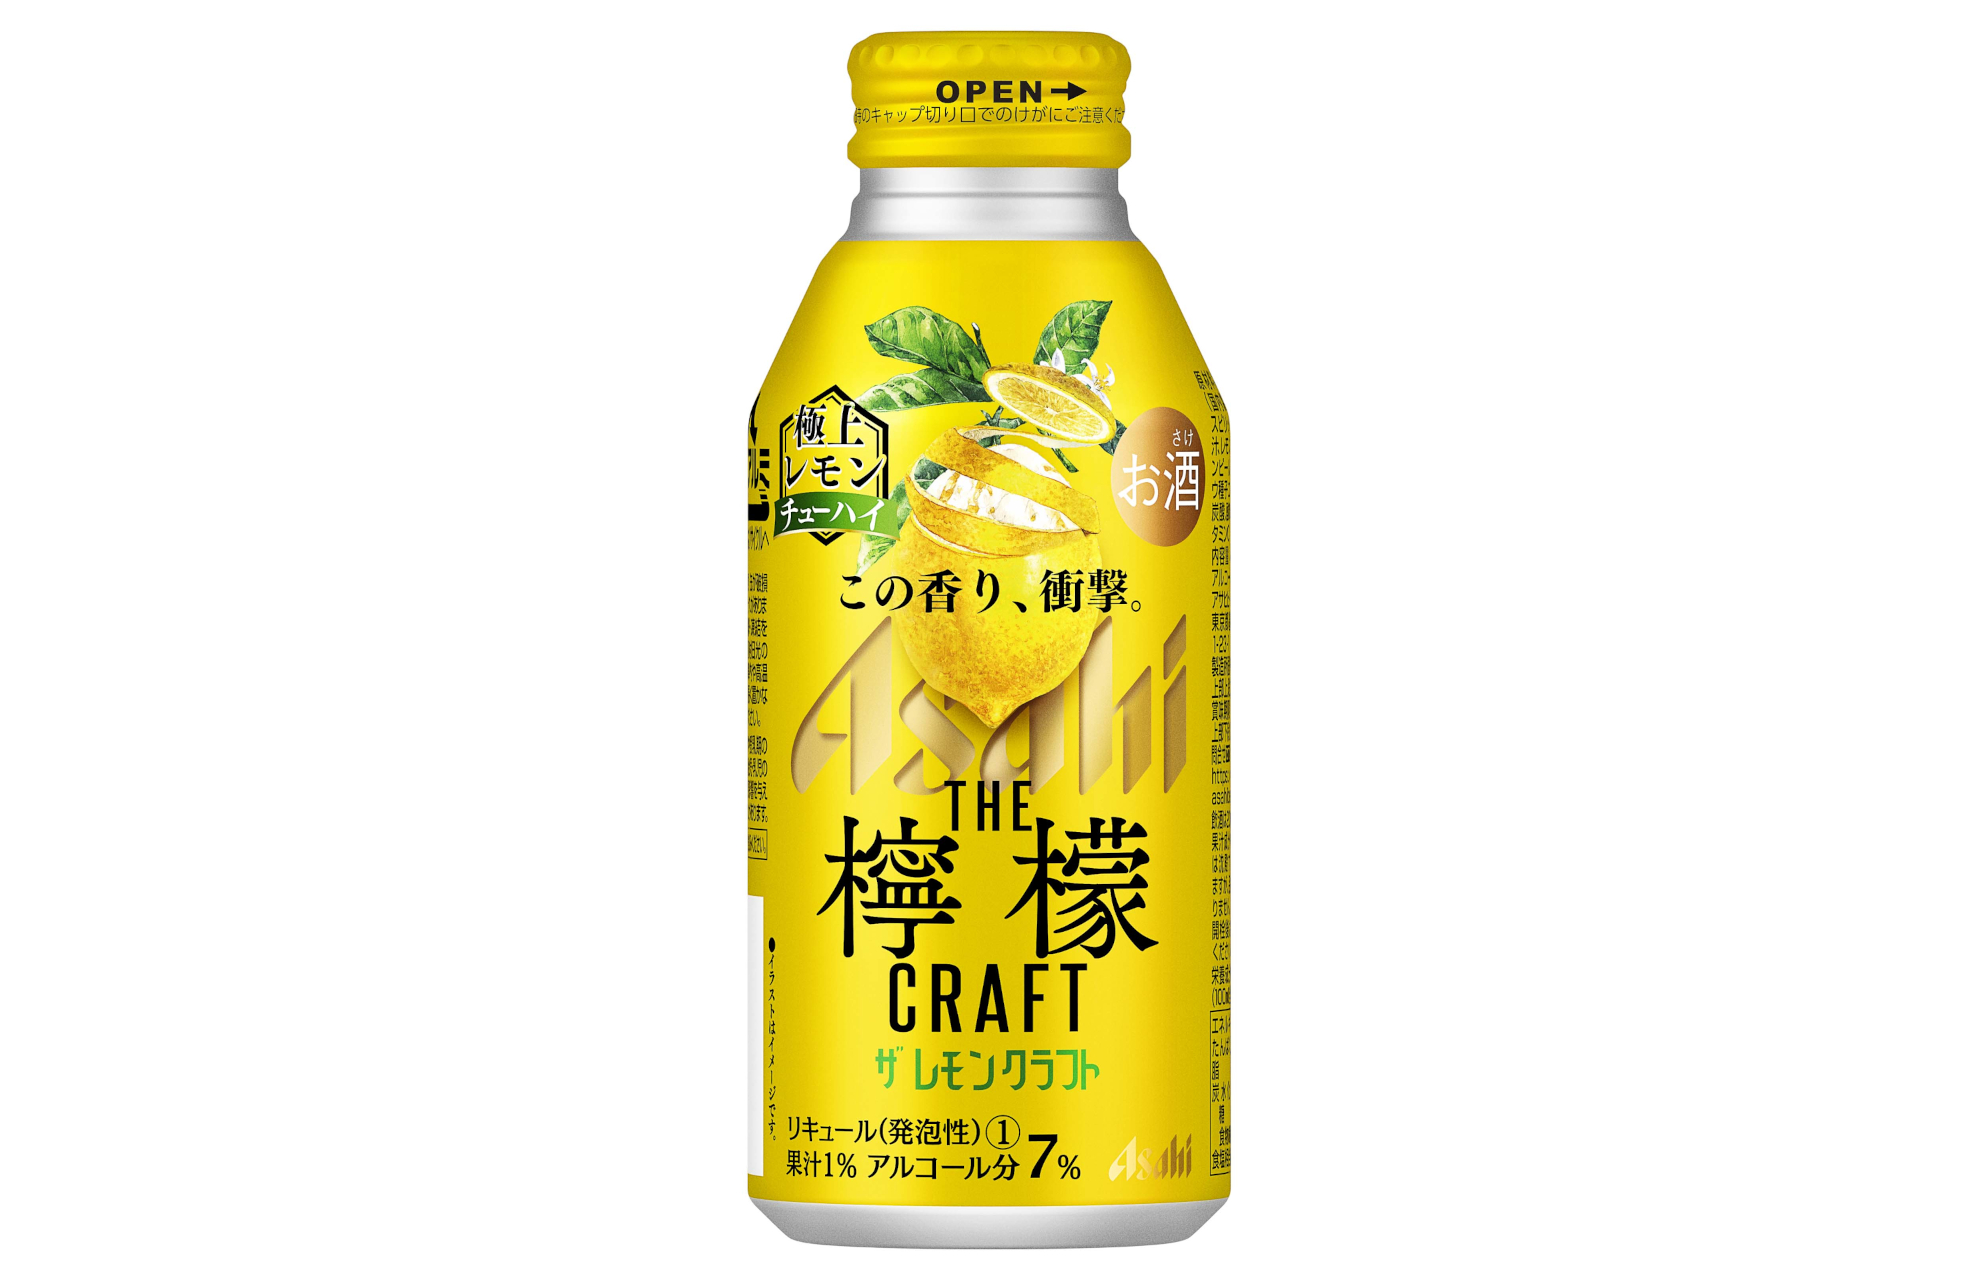 アサヒビール 5種類のレモン素材を使った アサヒ ザ レモンクラフト リニューアル発売 グルメ Watch